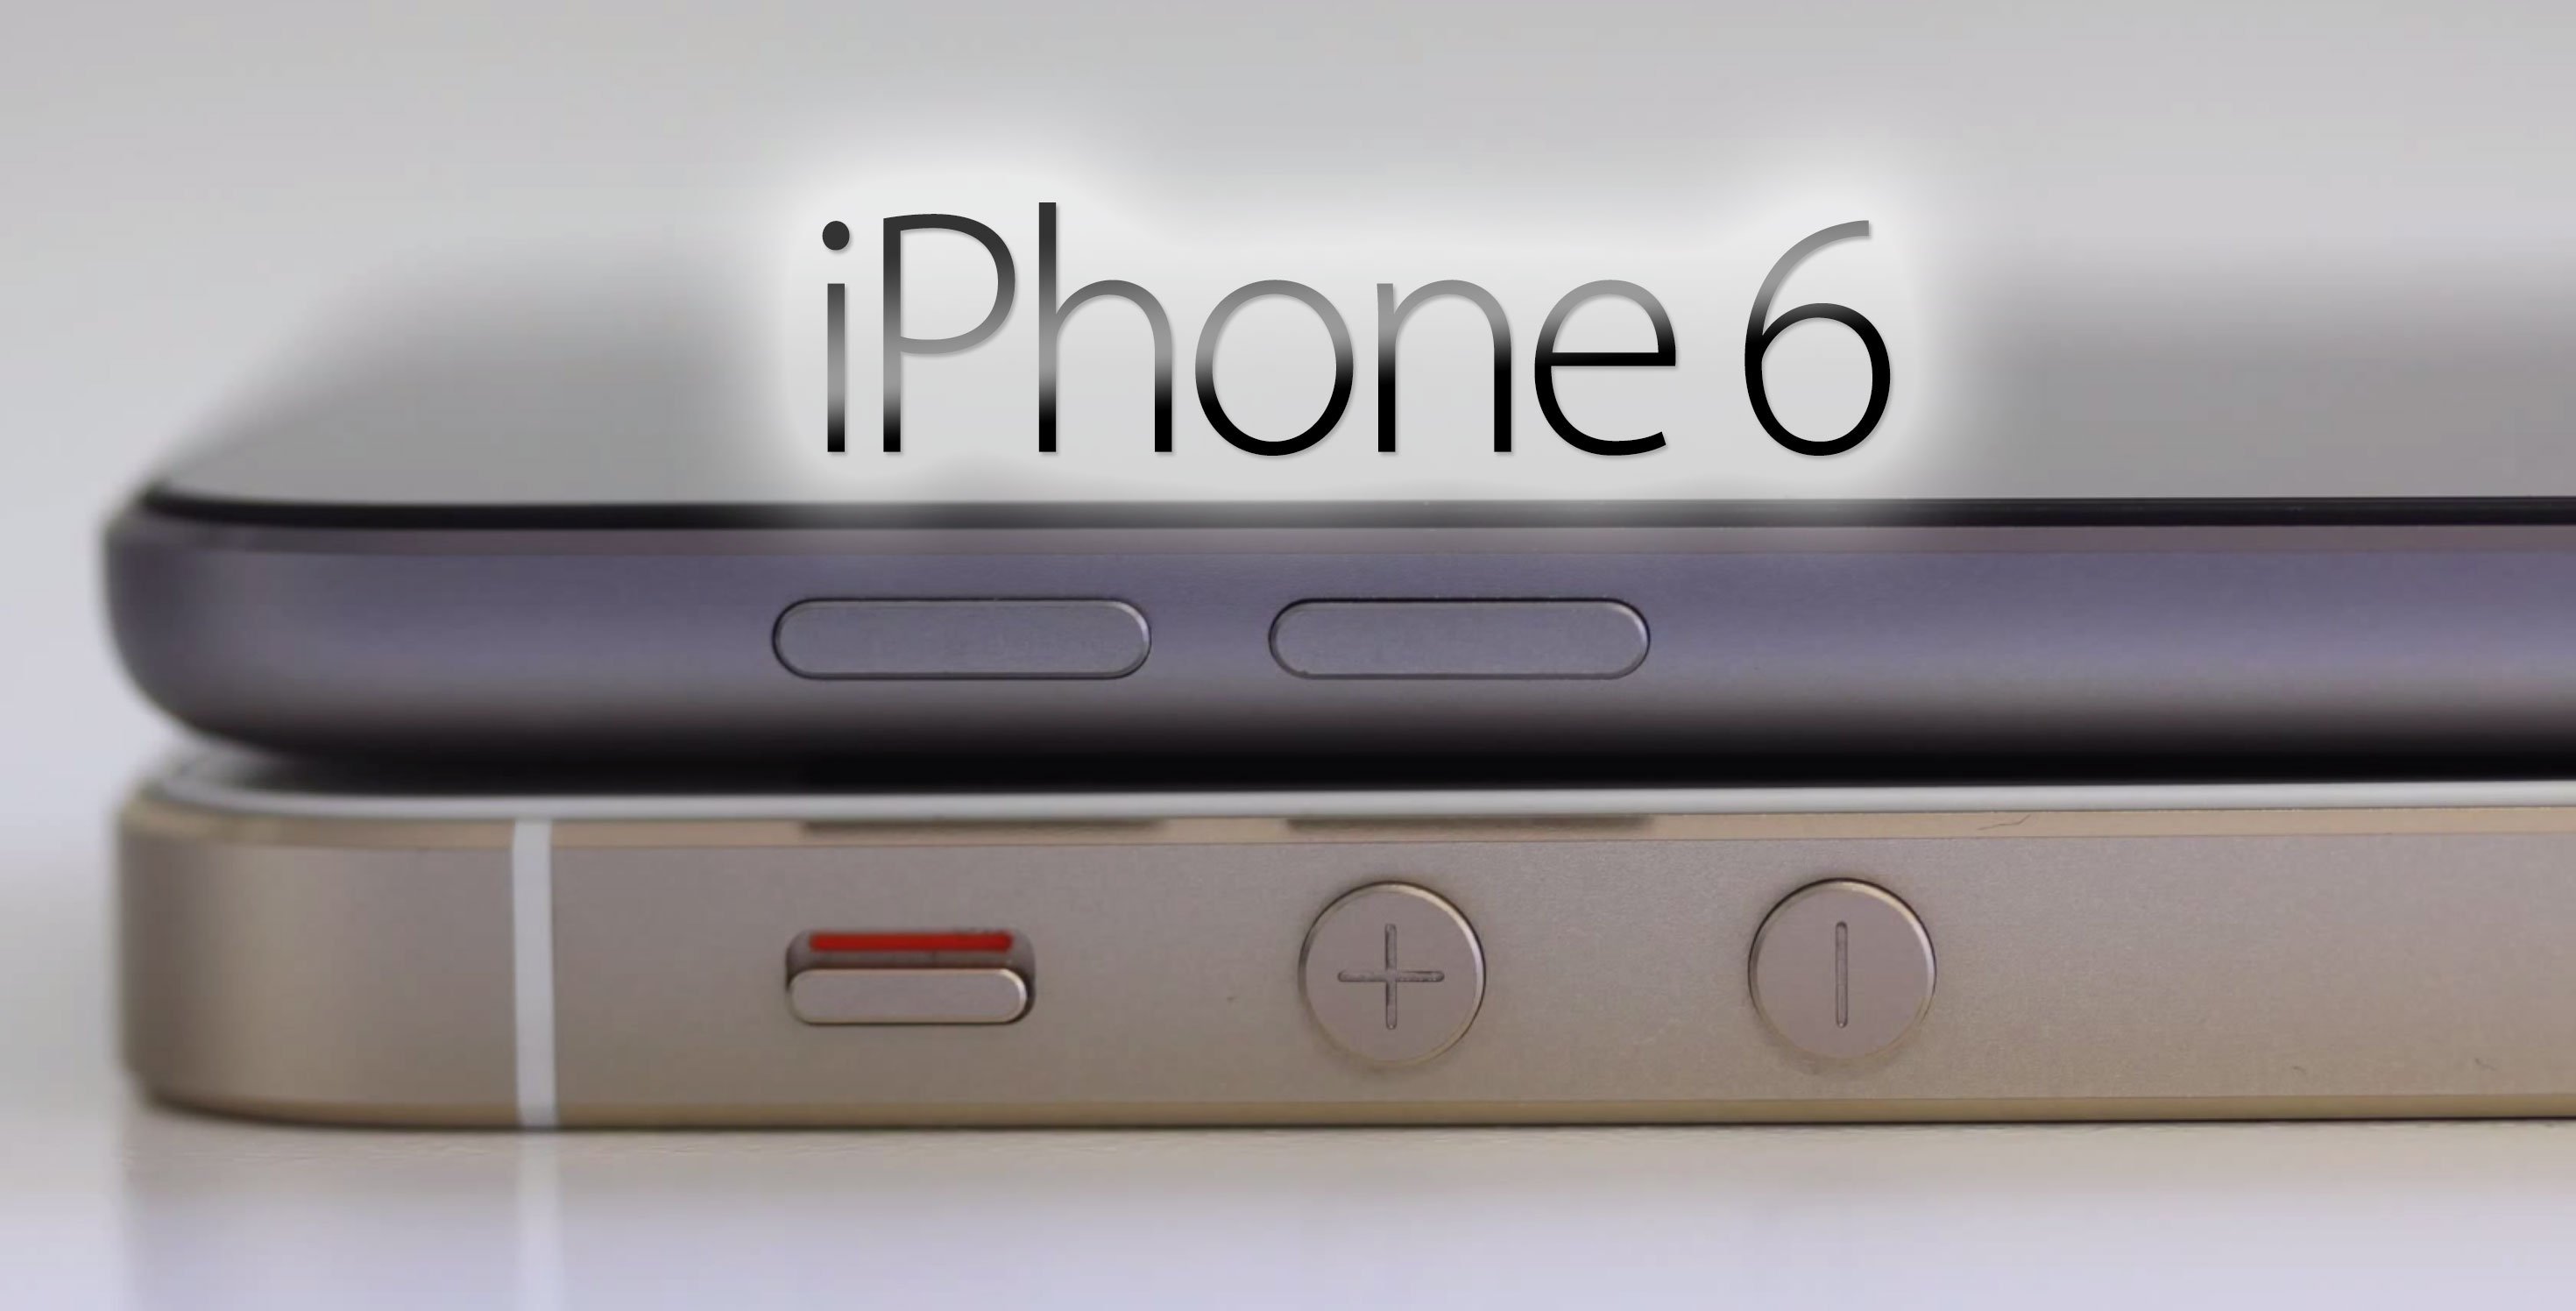 iPhone 6 kommt früher als erwartet - 4,7" iPhone 6 im August, 5,5" iPhone im September? 4